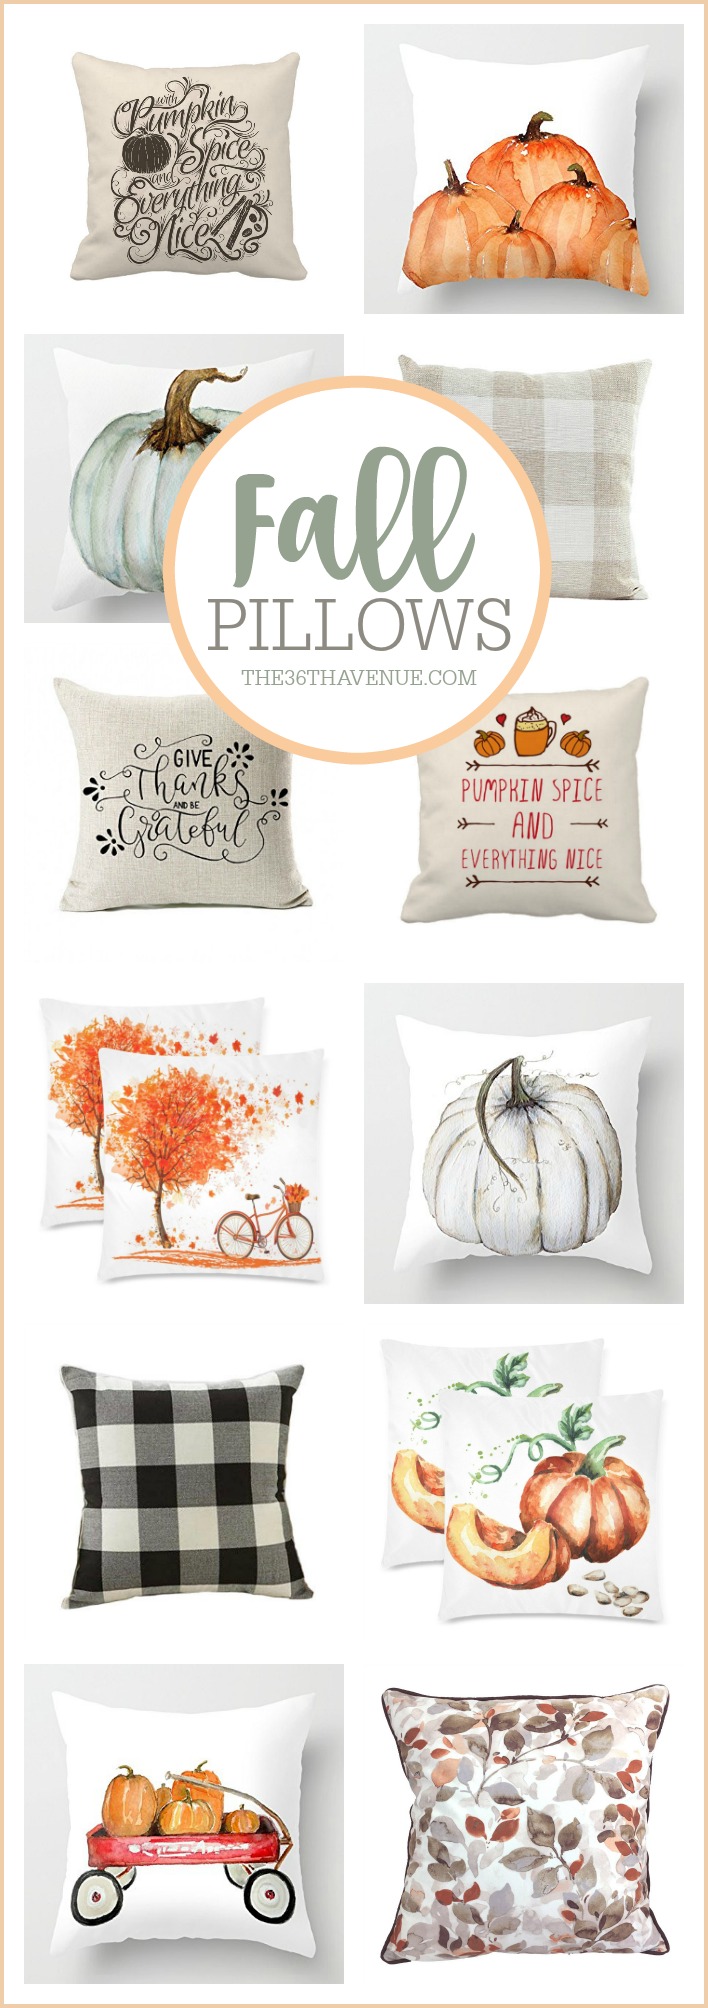 Fall Pillows, Fall Home Decor, Farmhouse Decor Ideas